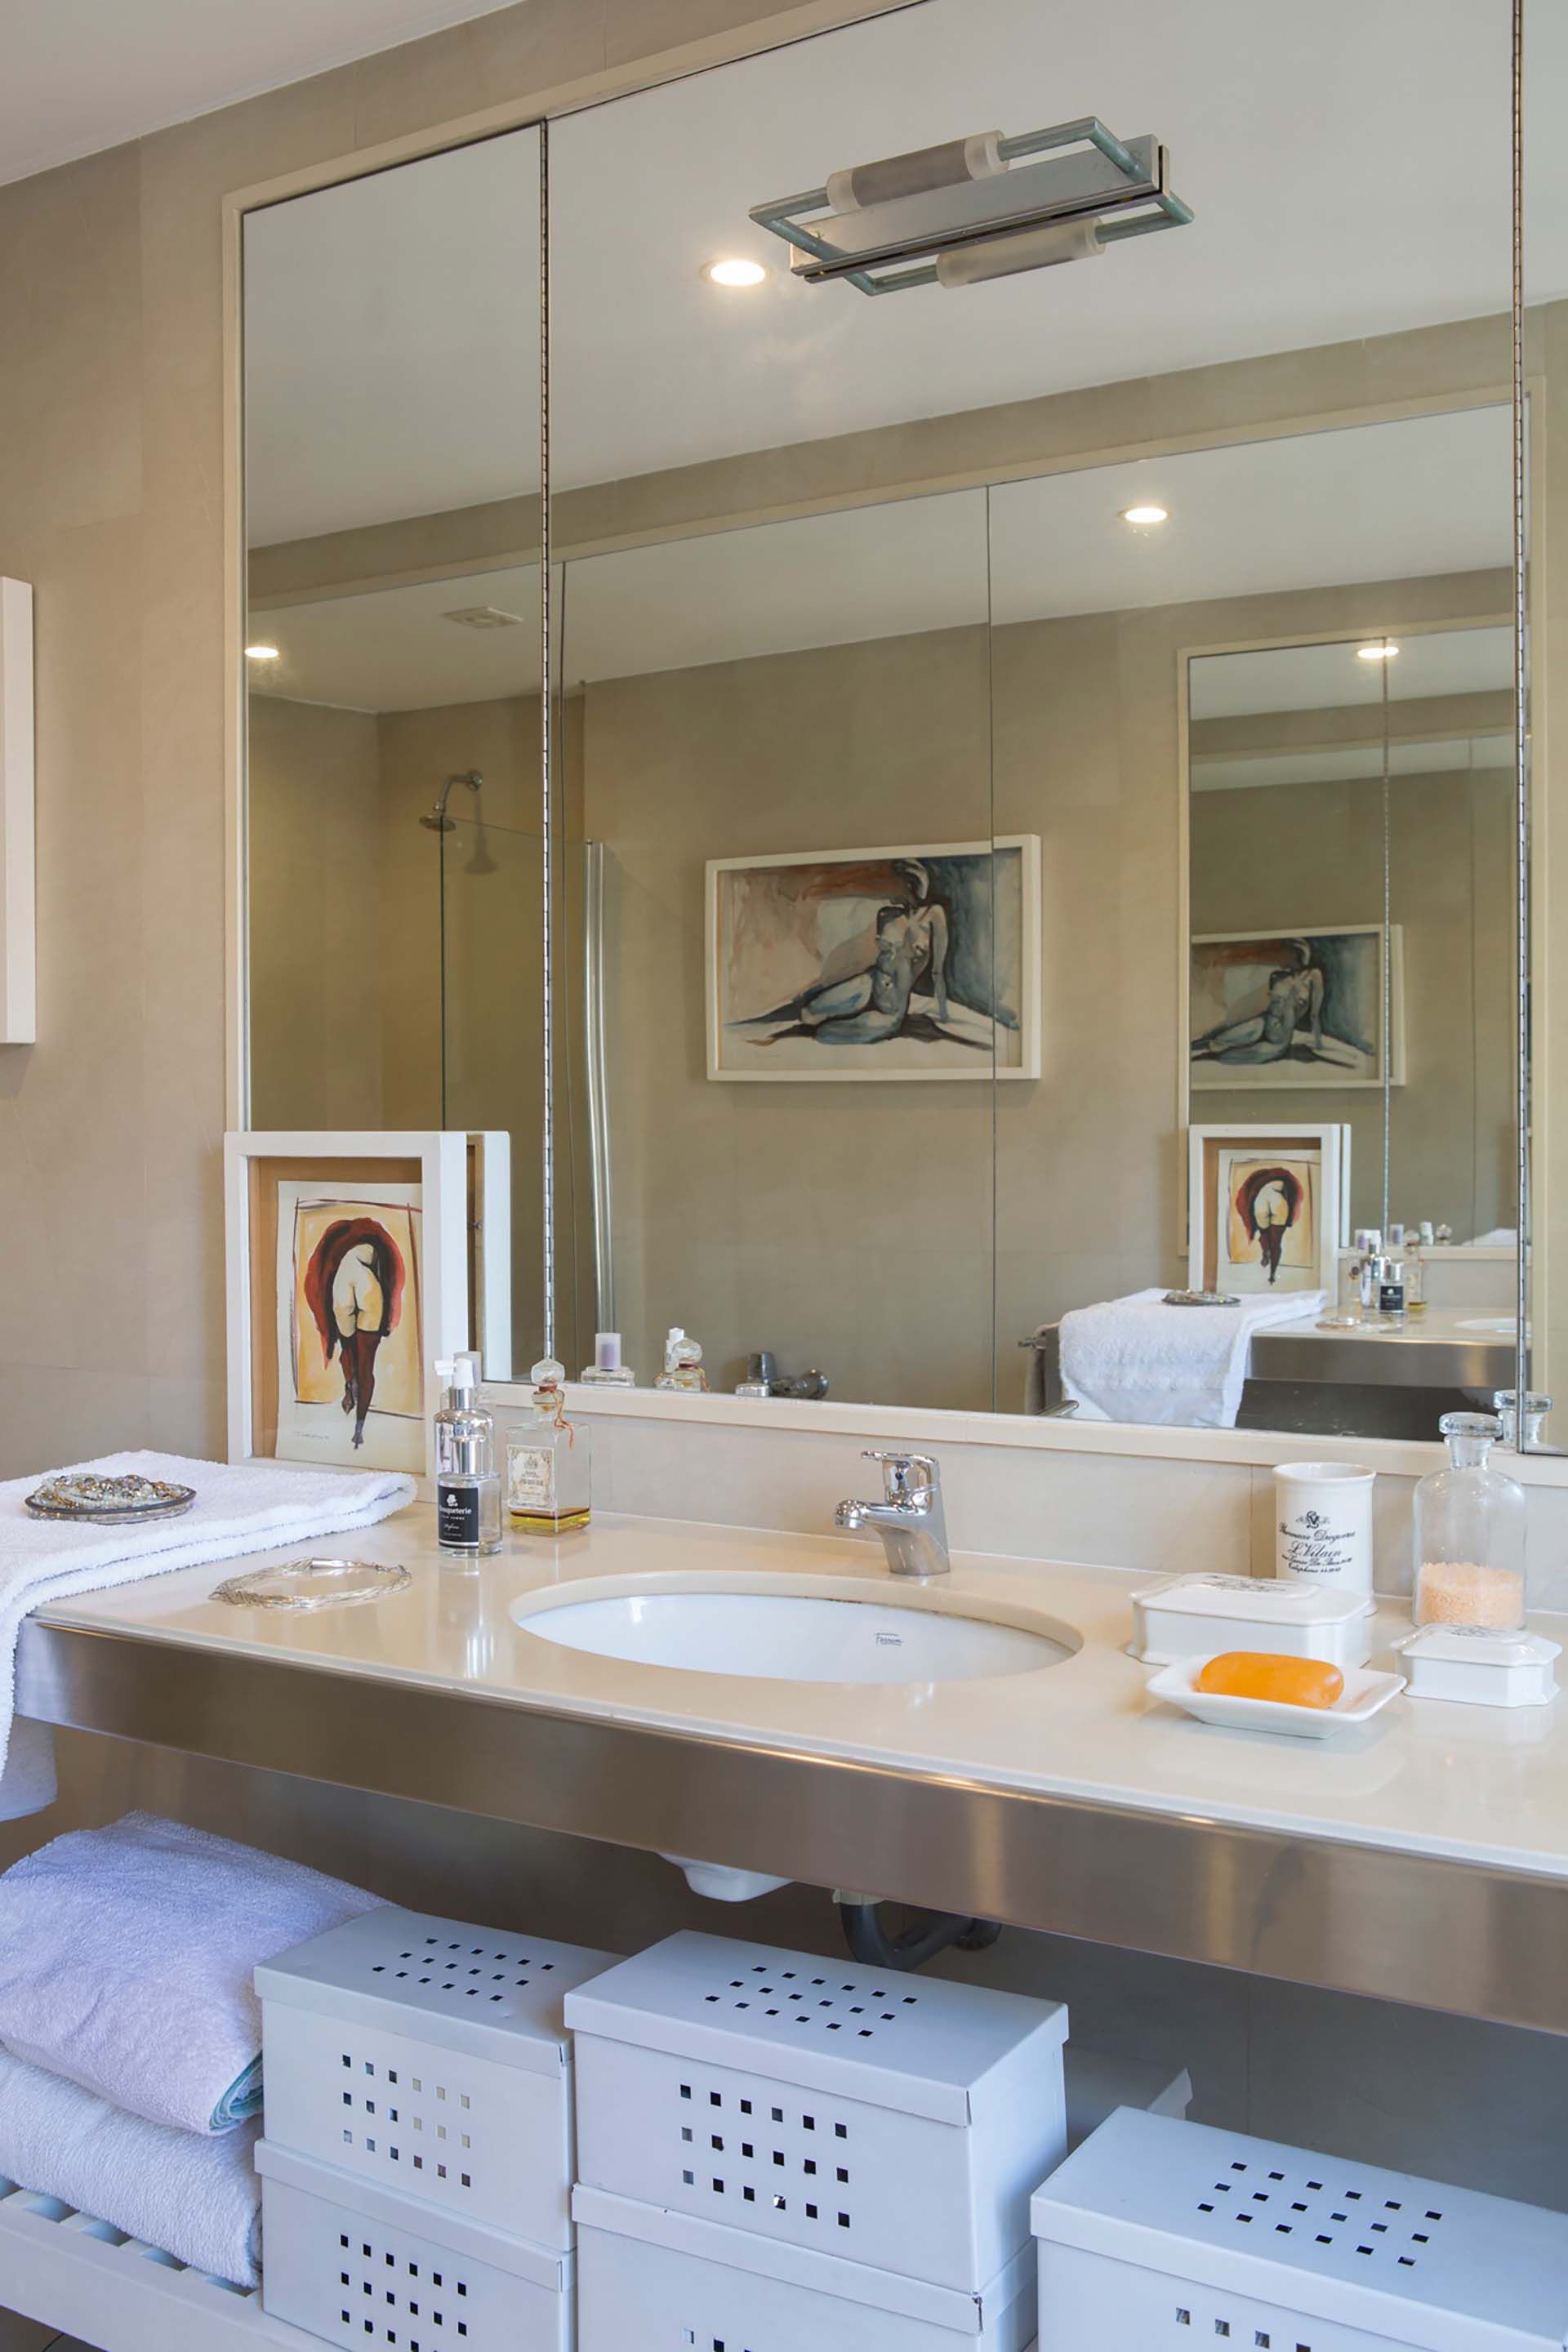 El arte también se cuela en el baño y se replica en el gran espejo pegado a filo que cubre la pared. Unas cajas decorativas permiten mantener todo en orden.